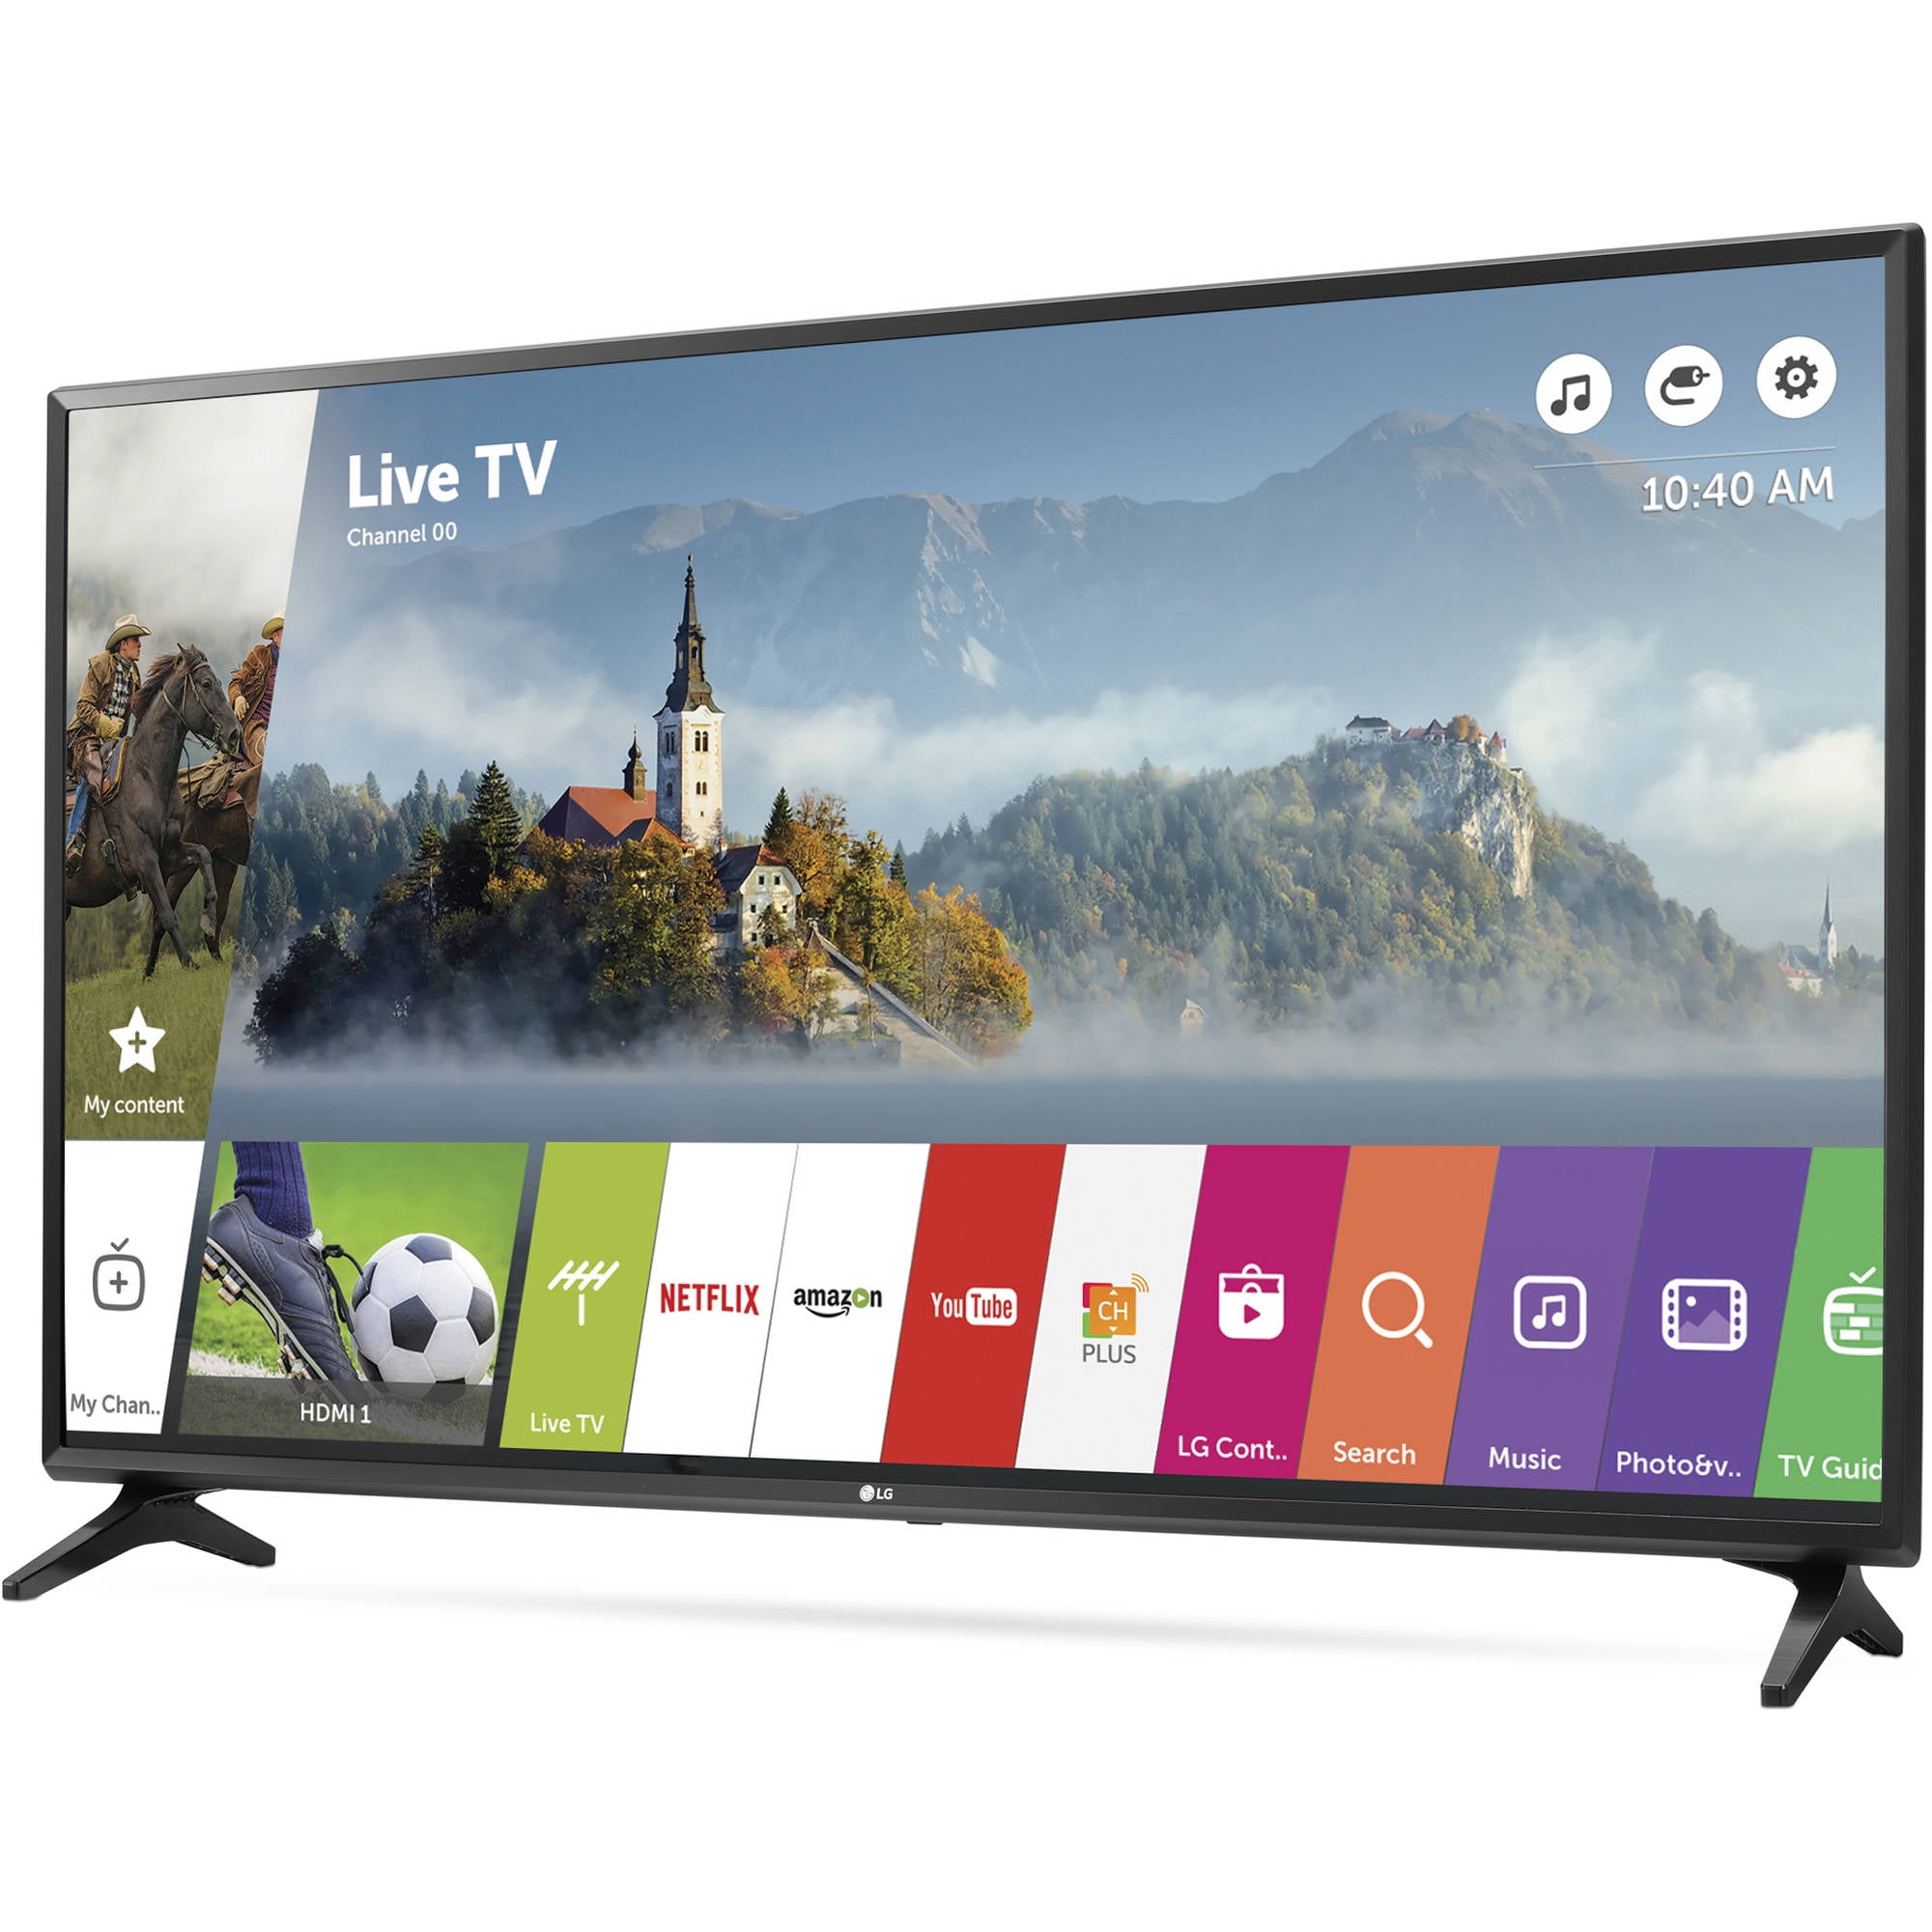 Список телевизоров lg. Телевизор LG смарт ТВ 108см. LG телевизор 49 смарт. Телевизор смарт ТВ 55 дюймов LG. Телевизор LG Smart TV 55 дюймов.